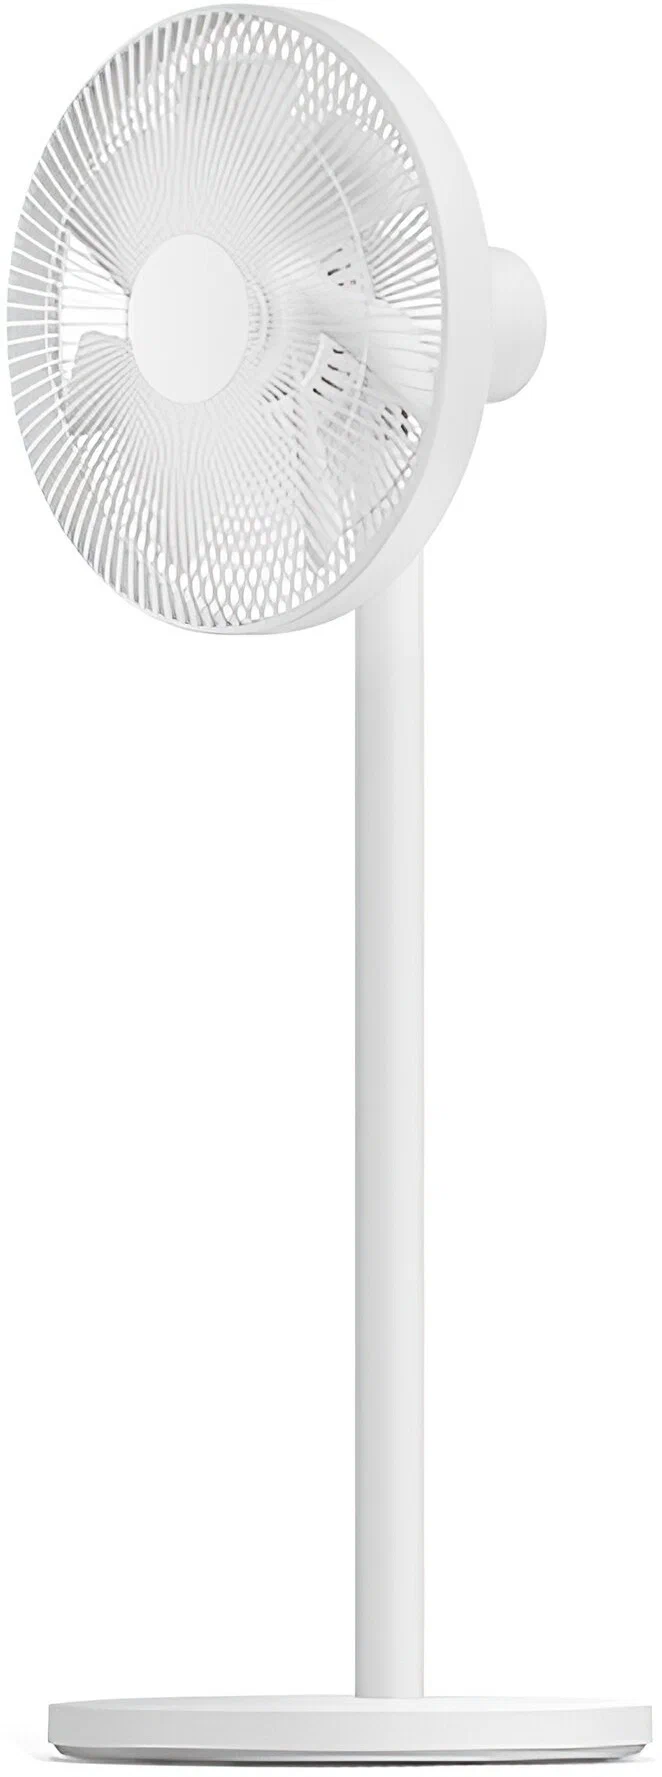 Напольный вентилятор Xiaomi Mijia DC Inverter Fan 1X (ZLBPLDS02ZM) в Челябинске купить по недорогим ценам с доставкой